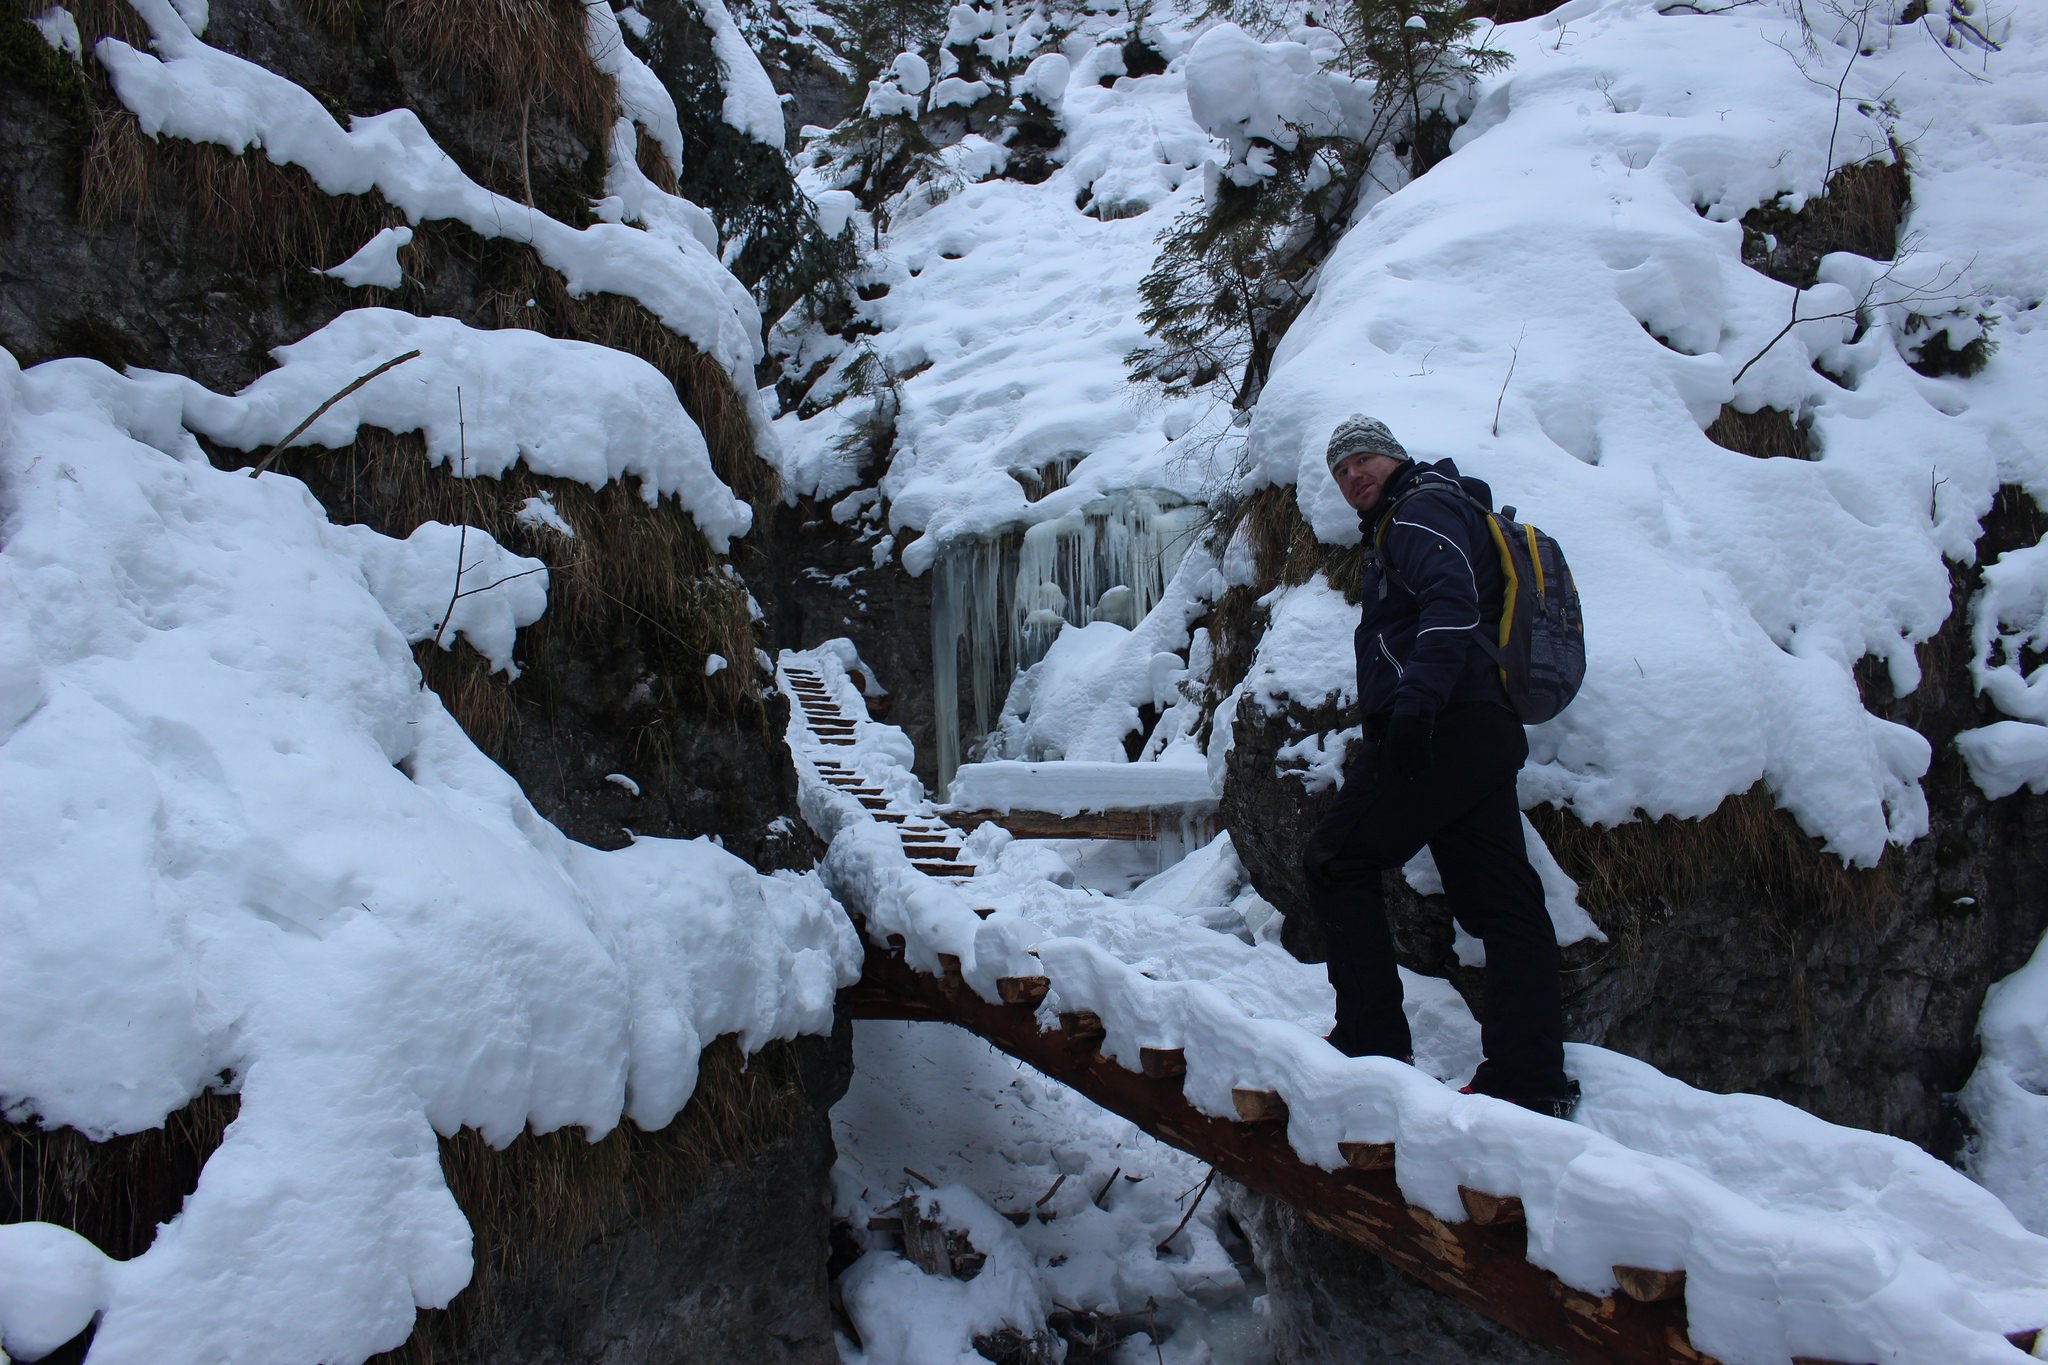 Suchá Belá gorge, winter hiking trip, Košice region, Slovakia – 17